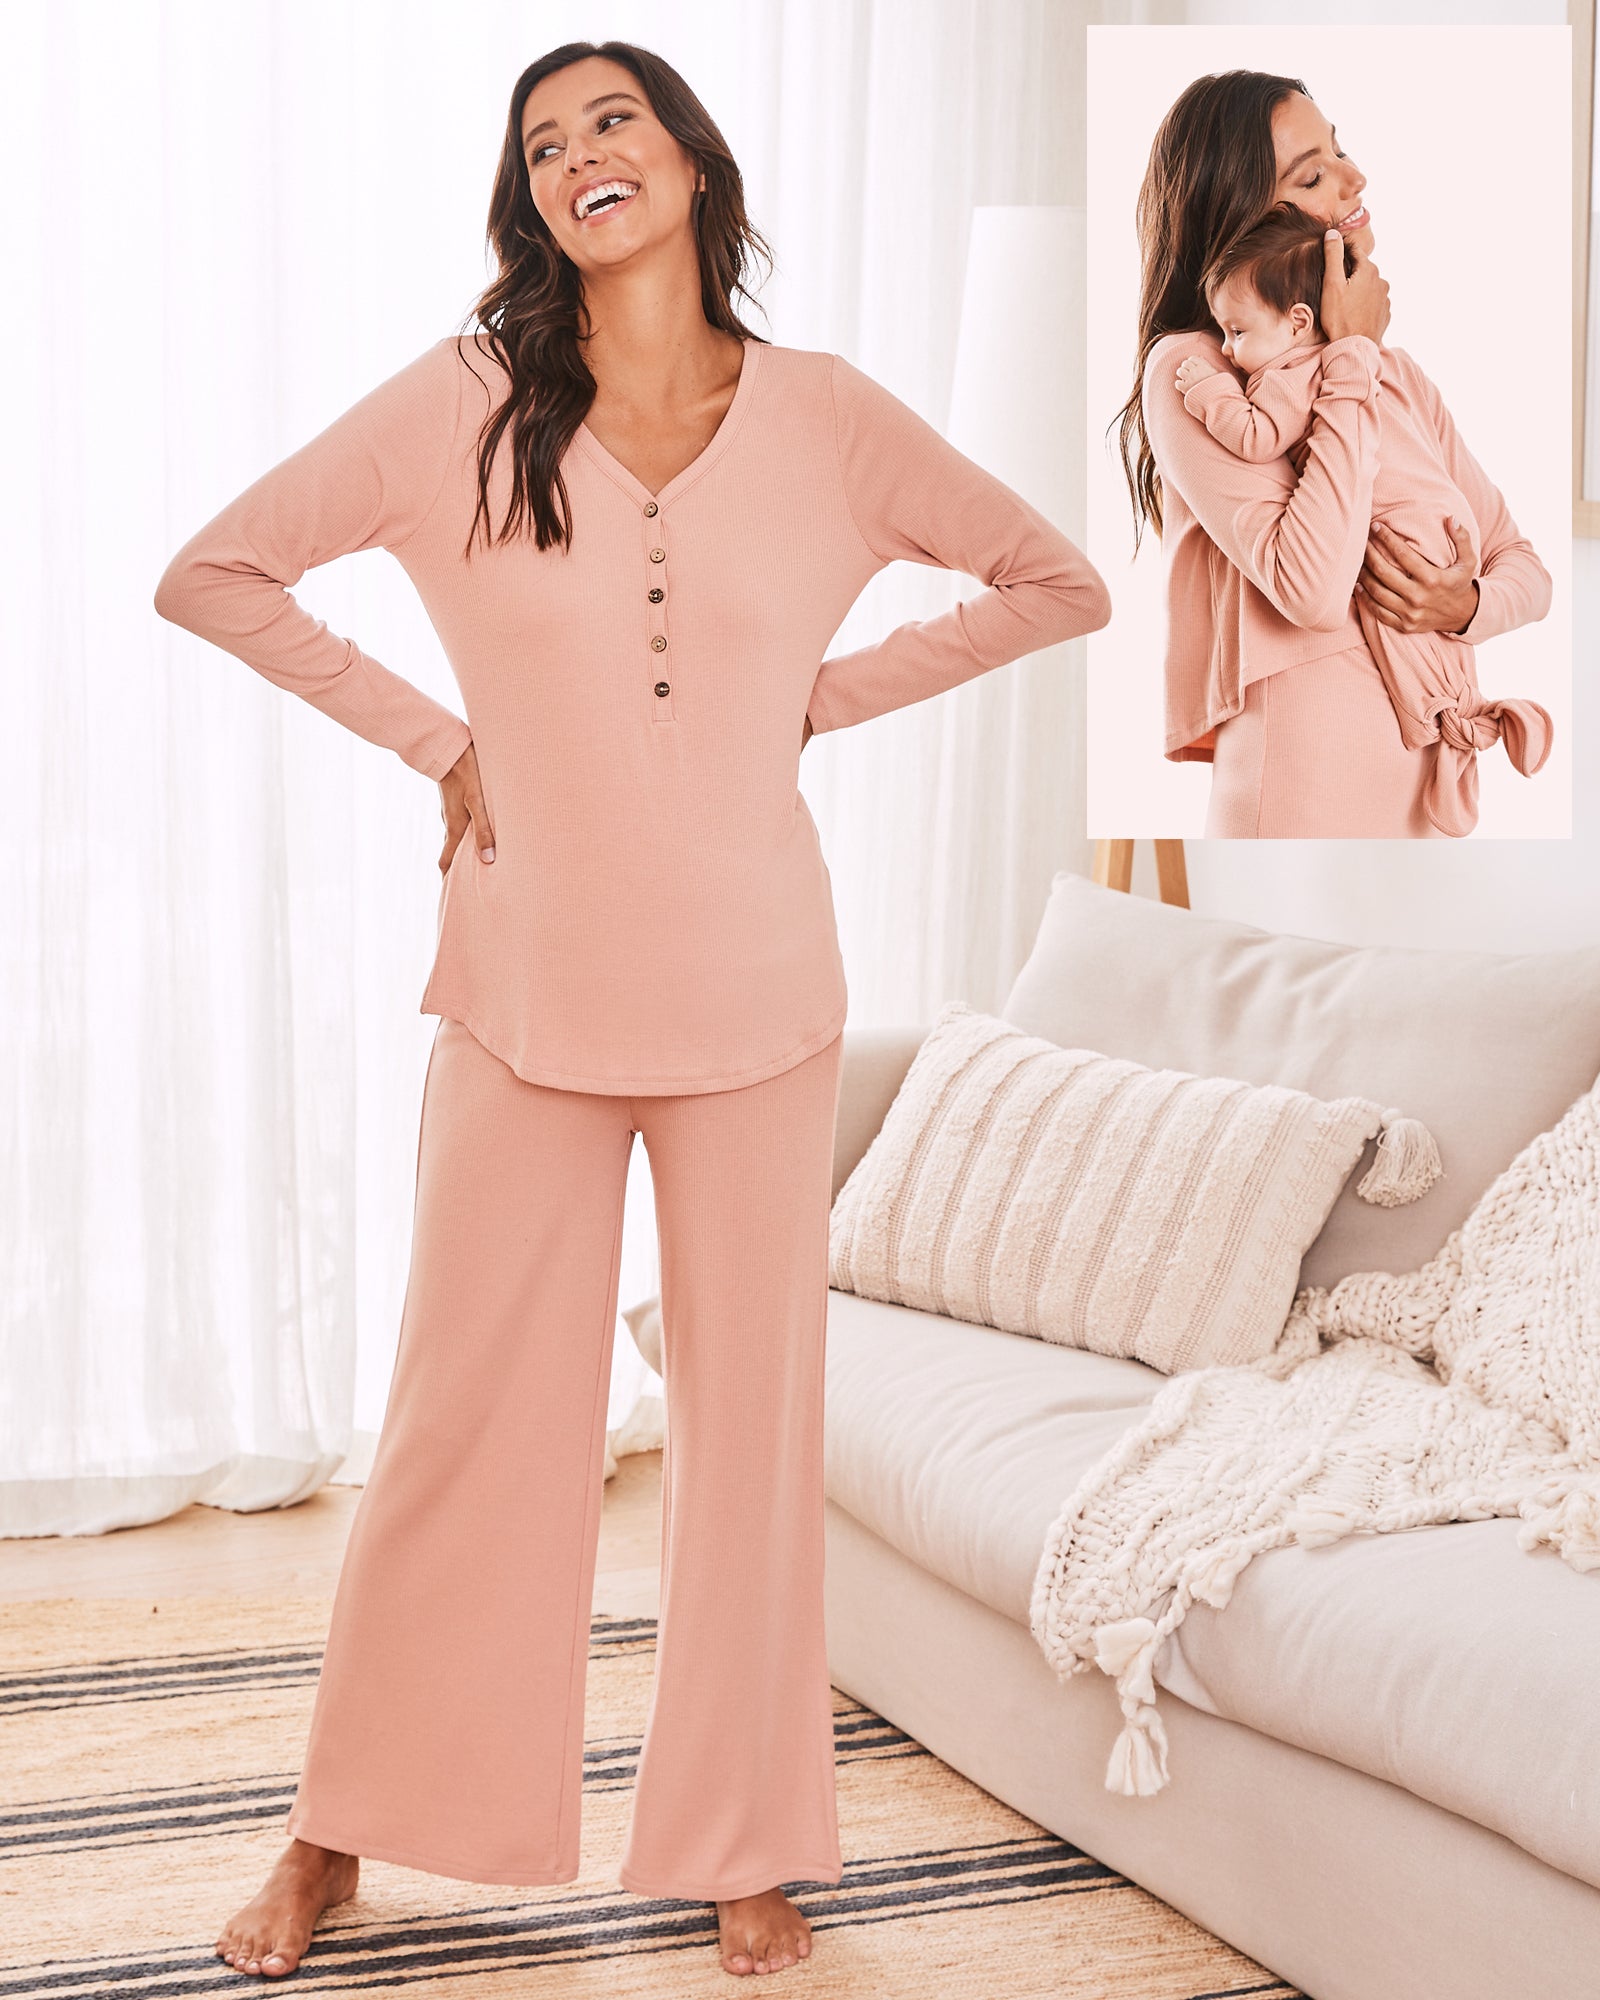 Main View - 3-Piece Isabelle Maternity Loungewear/ Sleepwear Set in Dusty Pink from Angel maternity